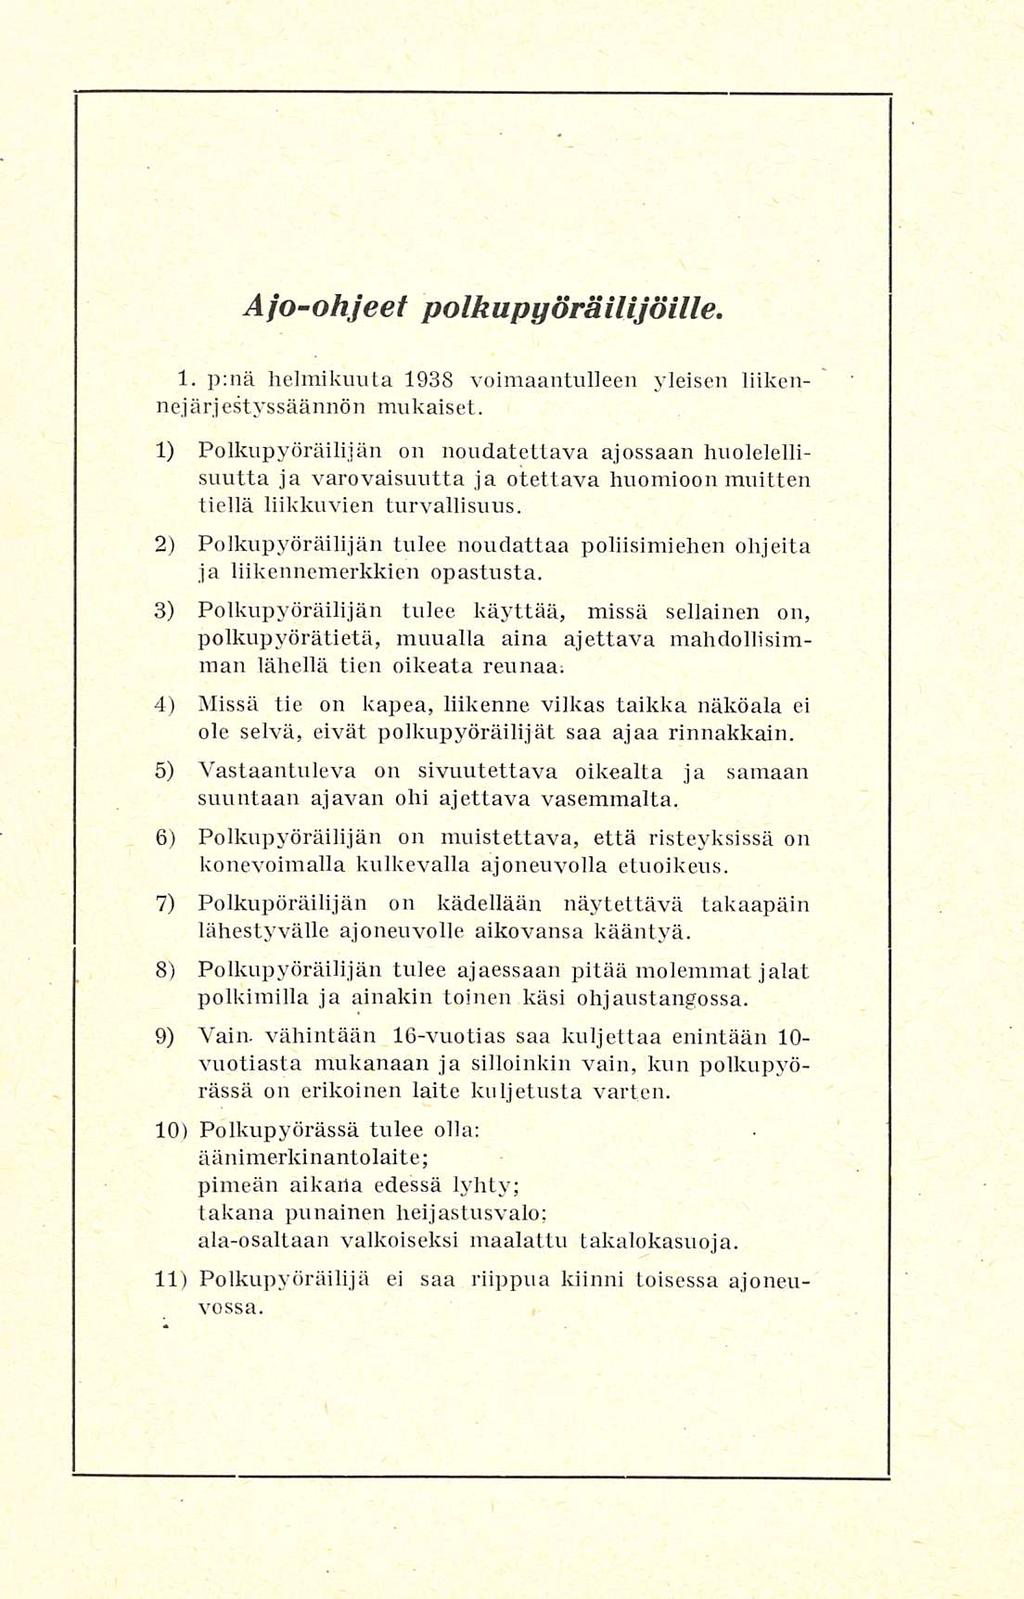 Afo-ohjeet polkupyöräilijöille. 1. p:nä helmikuuta 1938 voimaantulleen yleisen liikennejärjestyssäännön mukaiset.